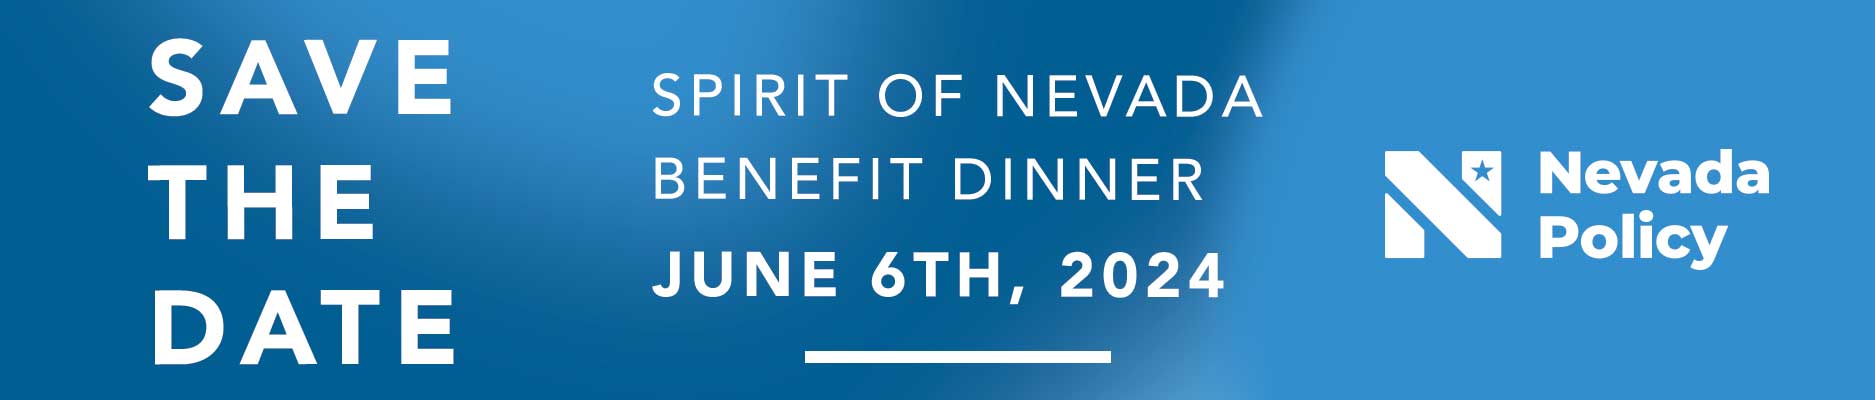 Spirit of Nevada Dinner